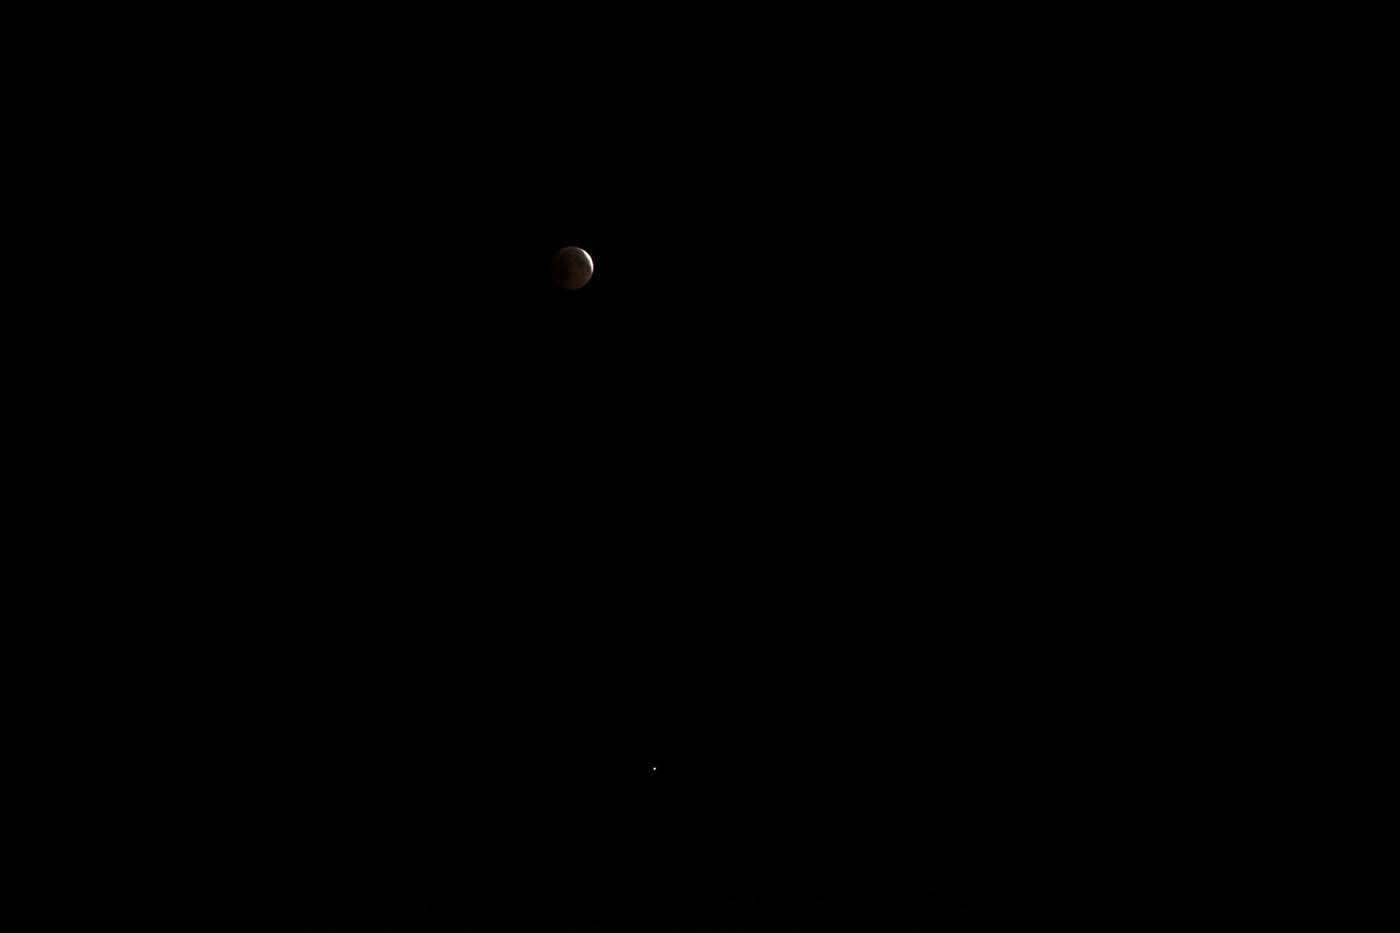 Lunar eclipse & Mars - 2018